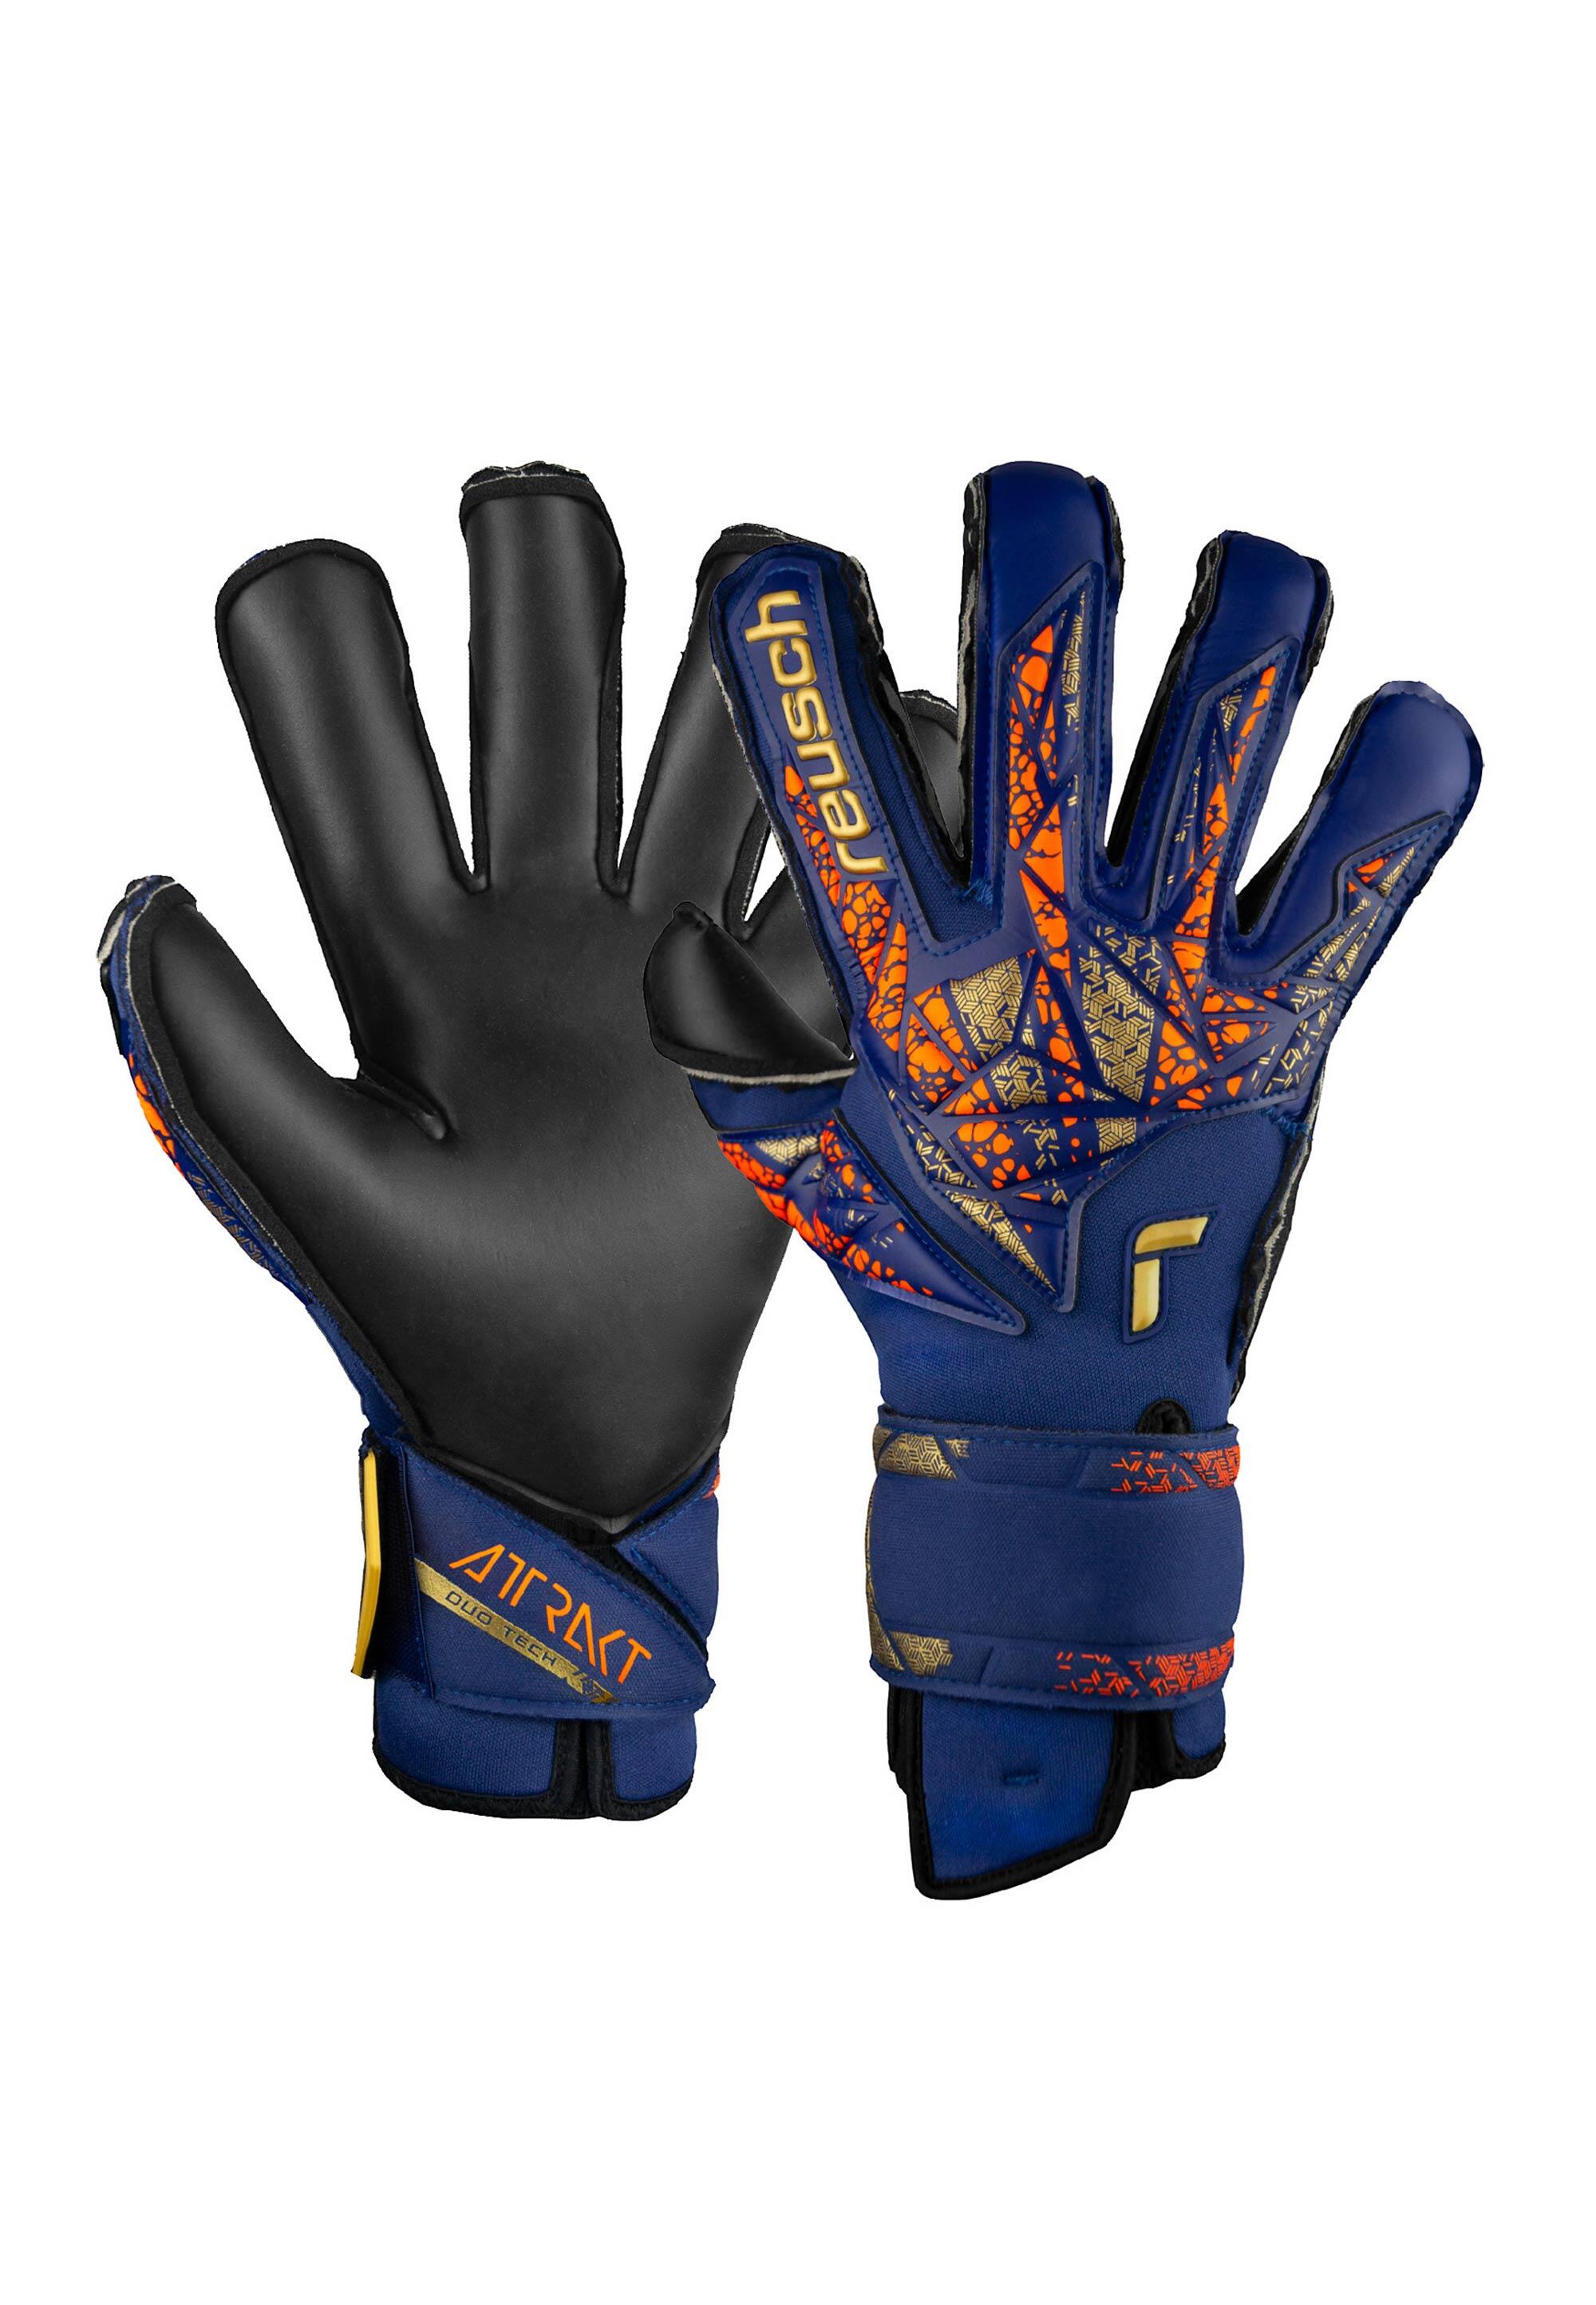 REUSCH Reusch Attrakt Duo Evolution (Alisson model) Goalkeeper Gloves